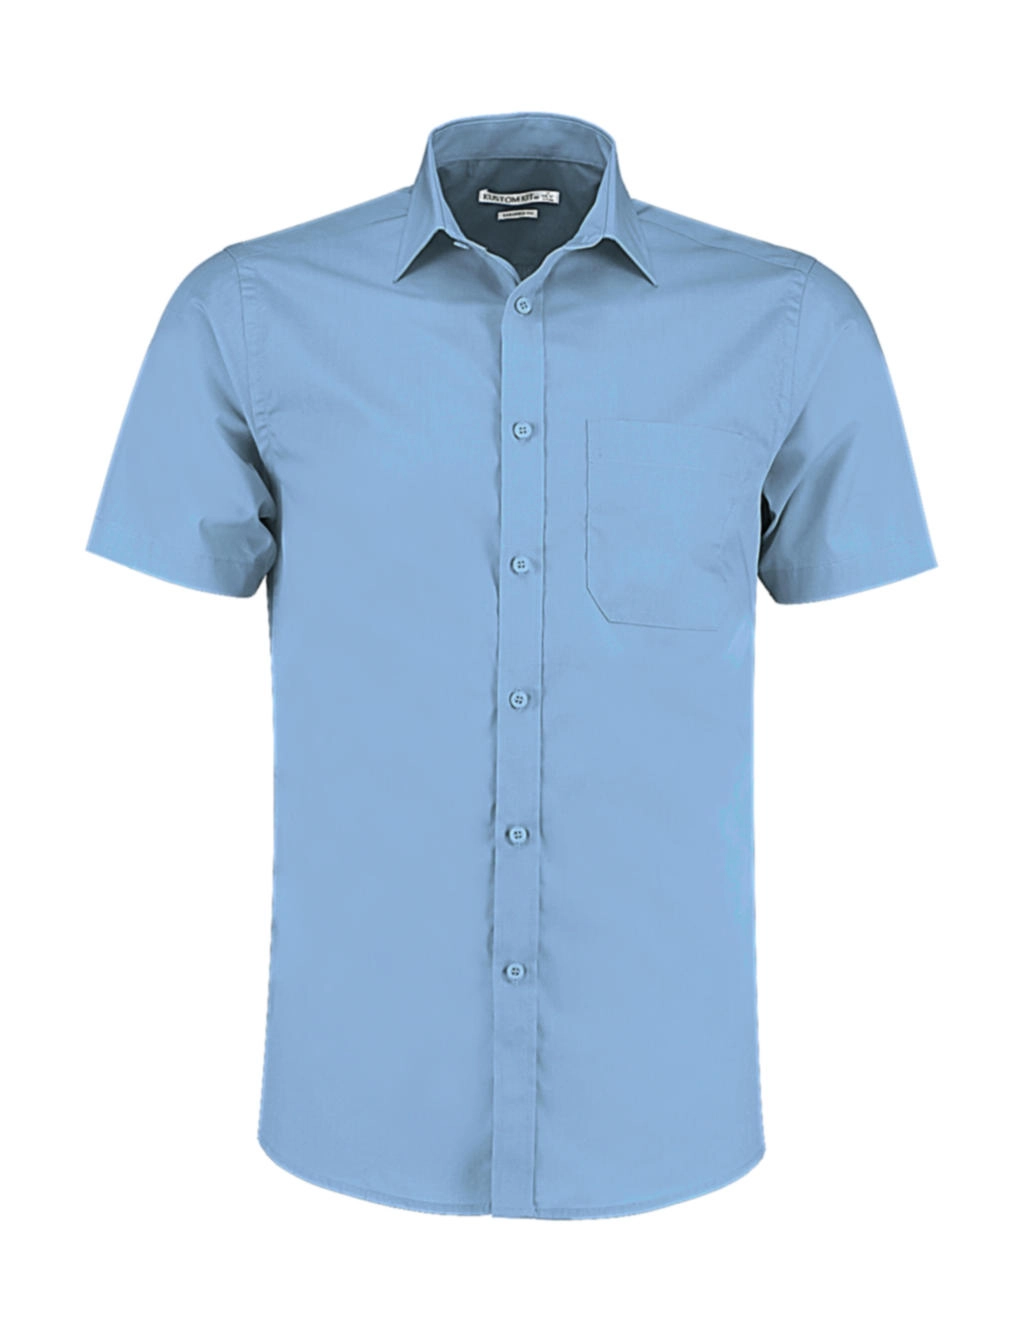 Tailored Fit Poplin Shirt SSL zum Besticken und Bedrucken in der Farbe Light Blue mit Ihren Logo, Schriftzug oder Motiv.